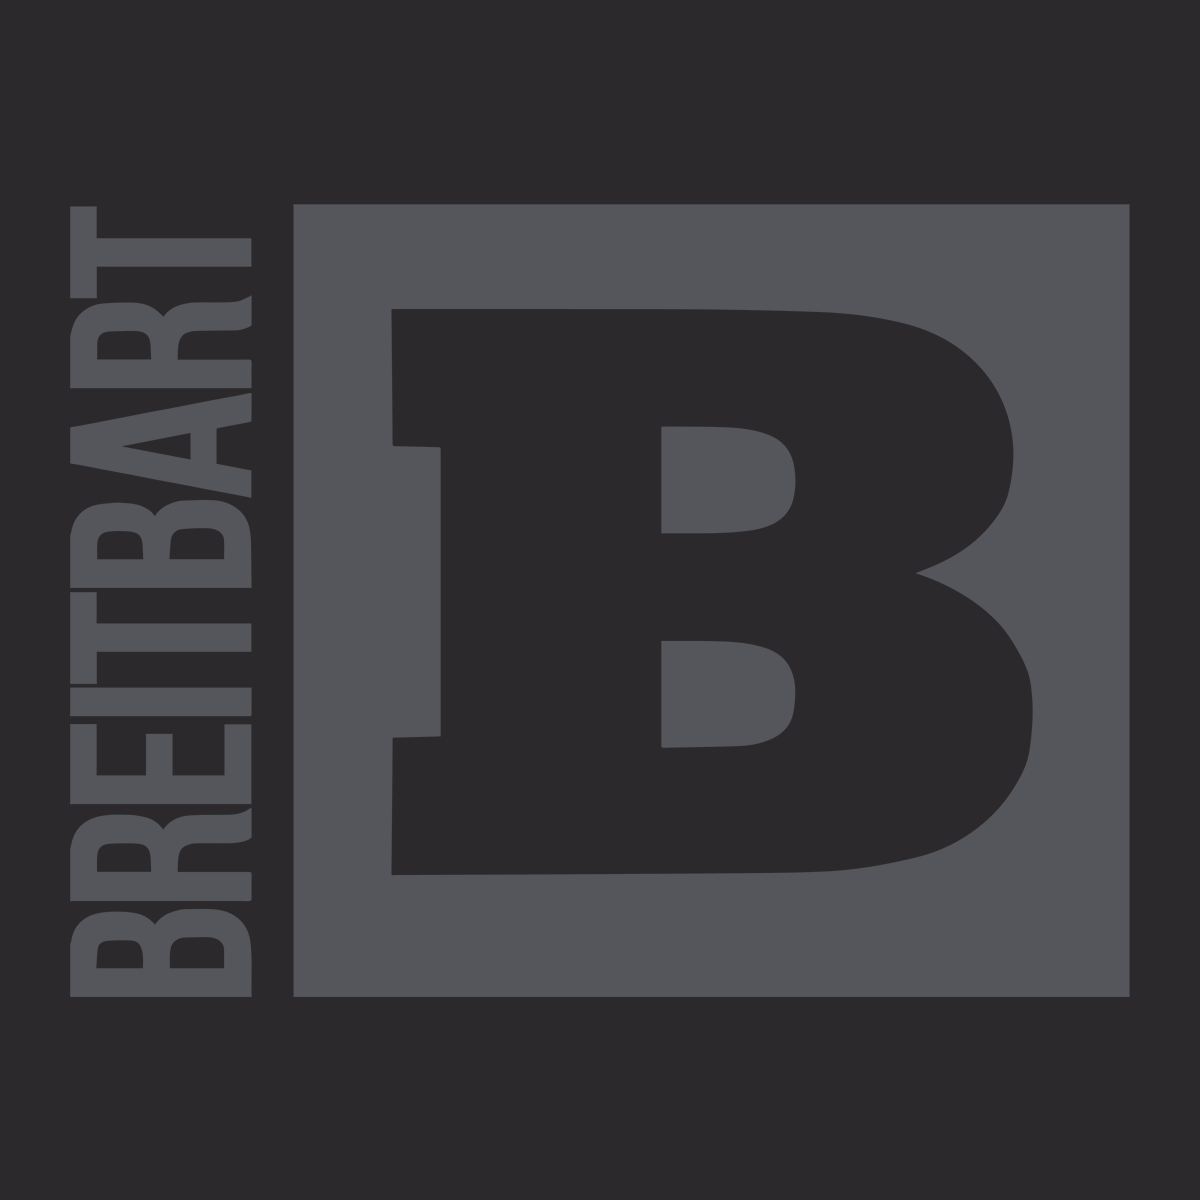 Official Breitbart Logo T-Shirt - Black